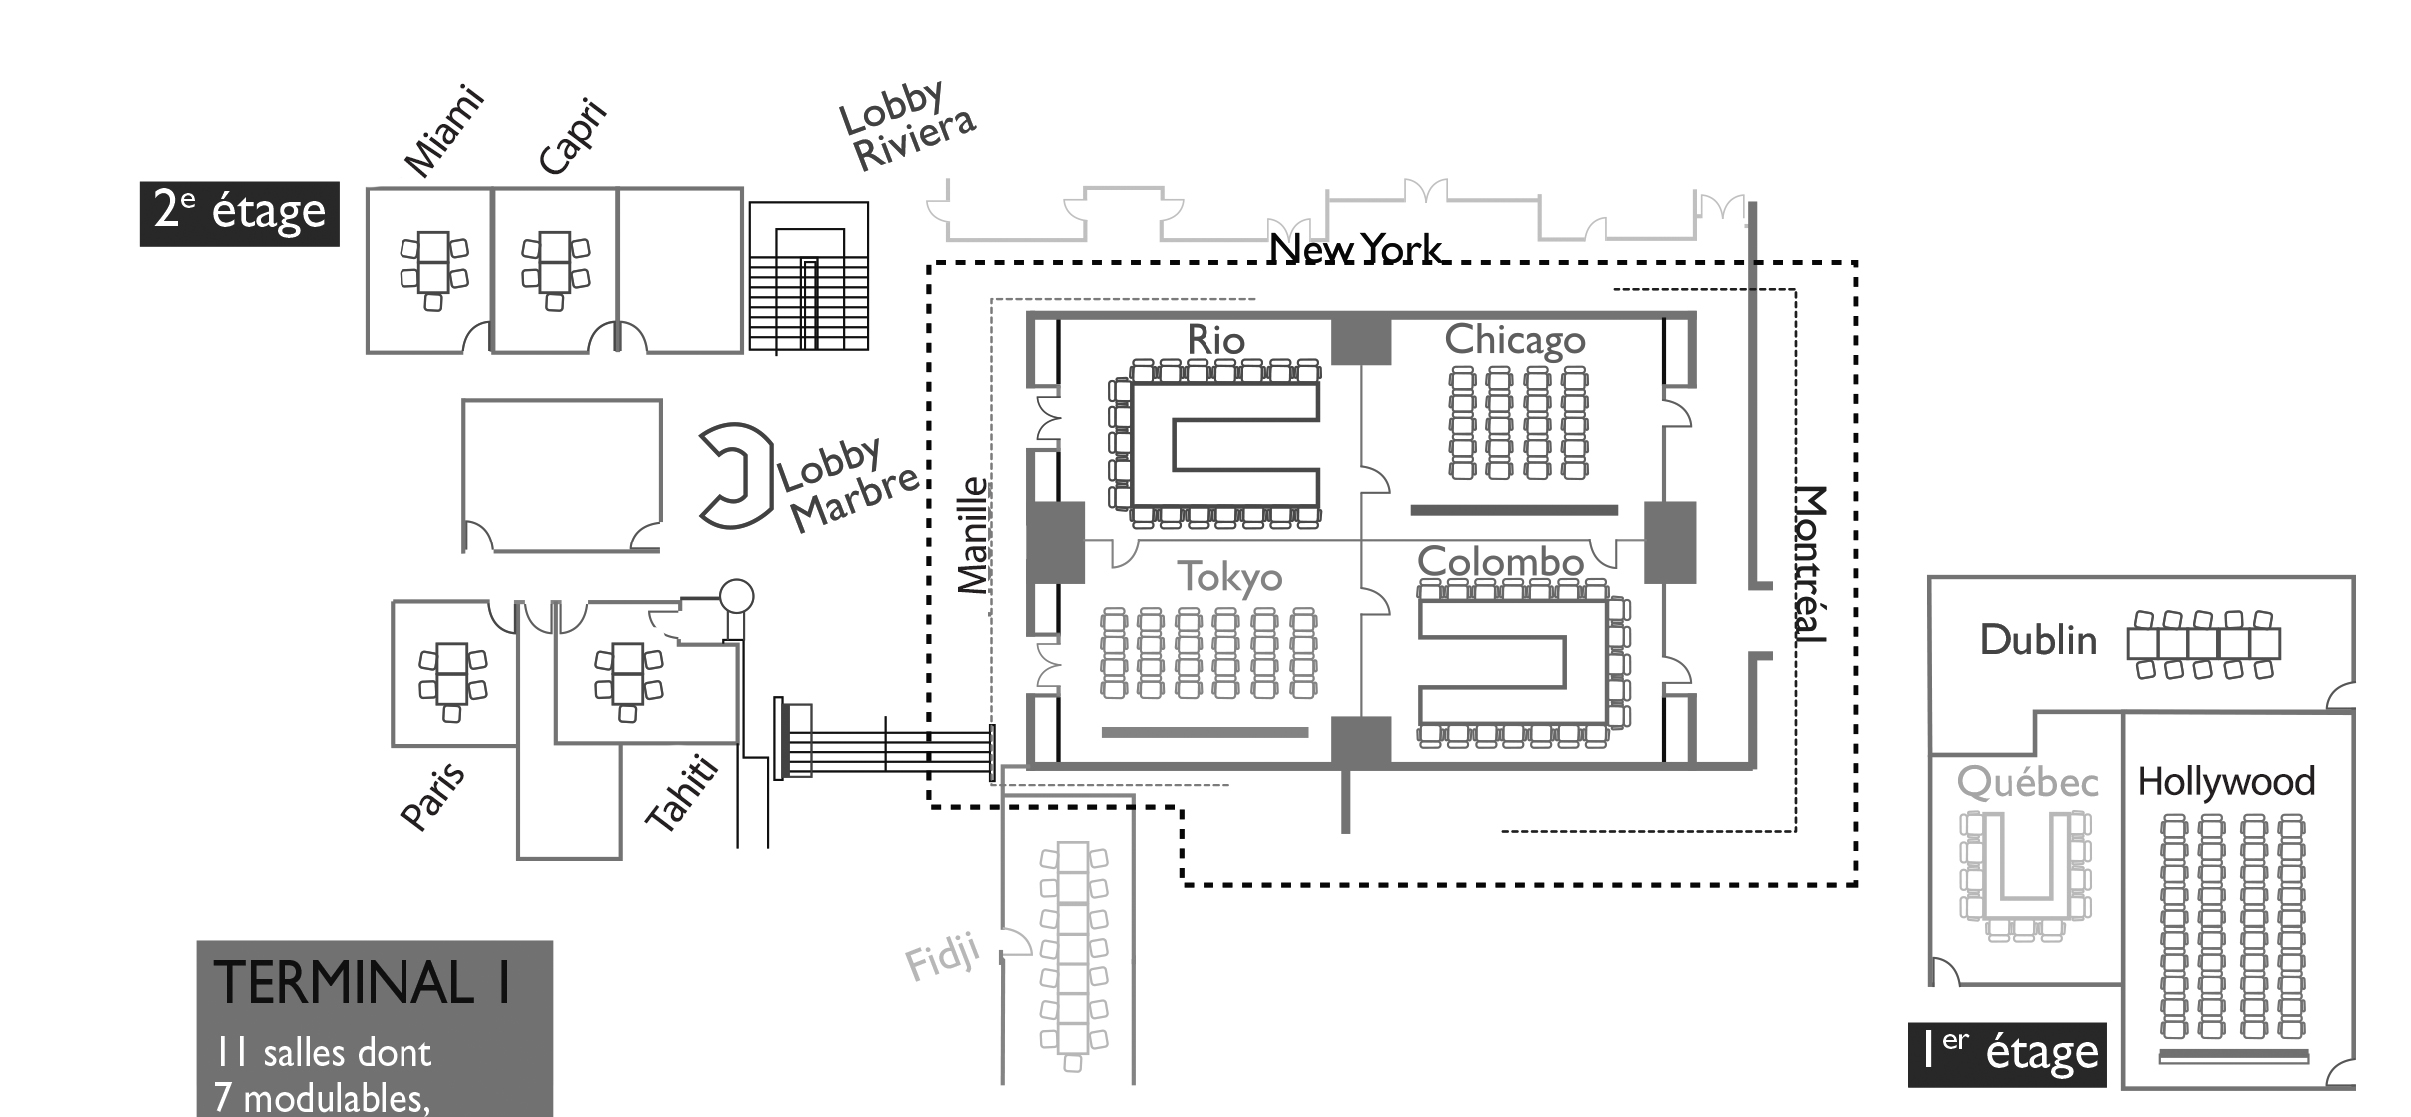 Plan location de salles et de bureaux terminal 1